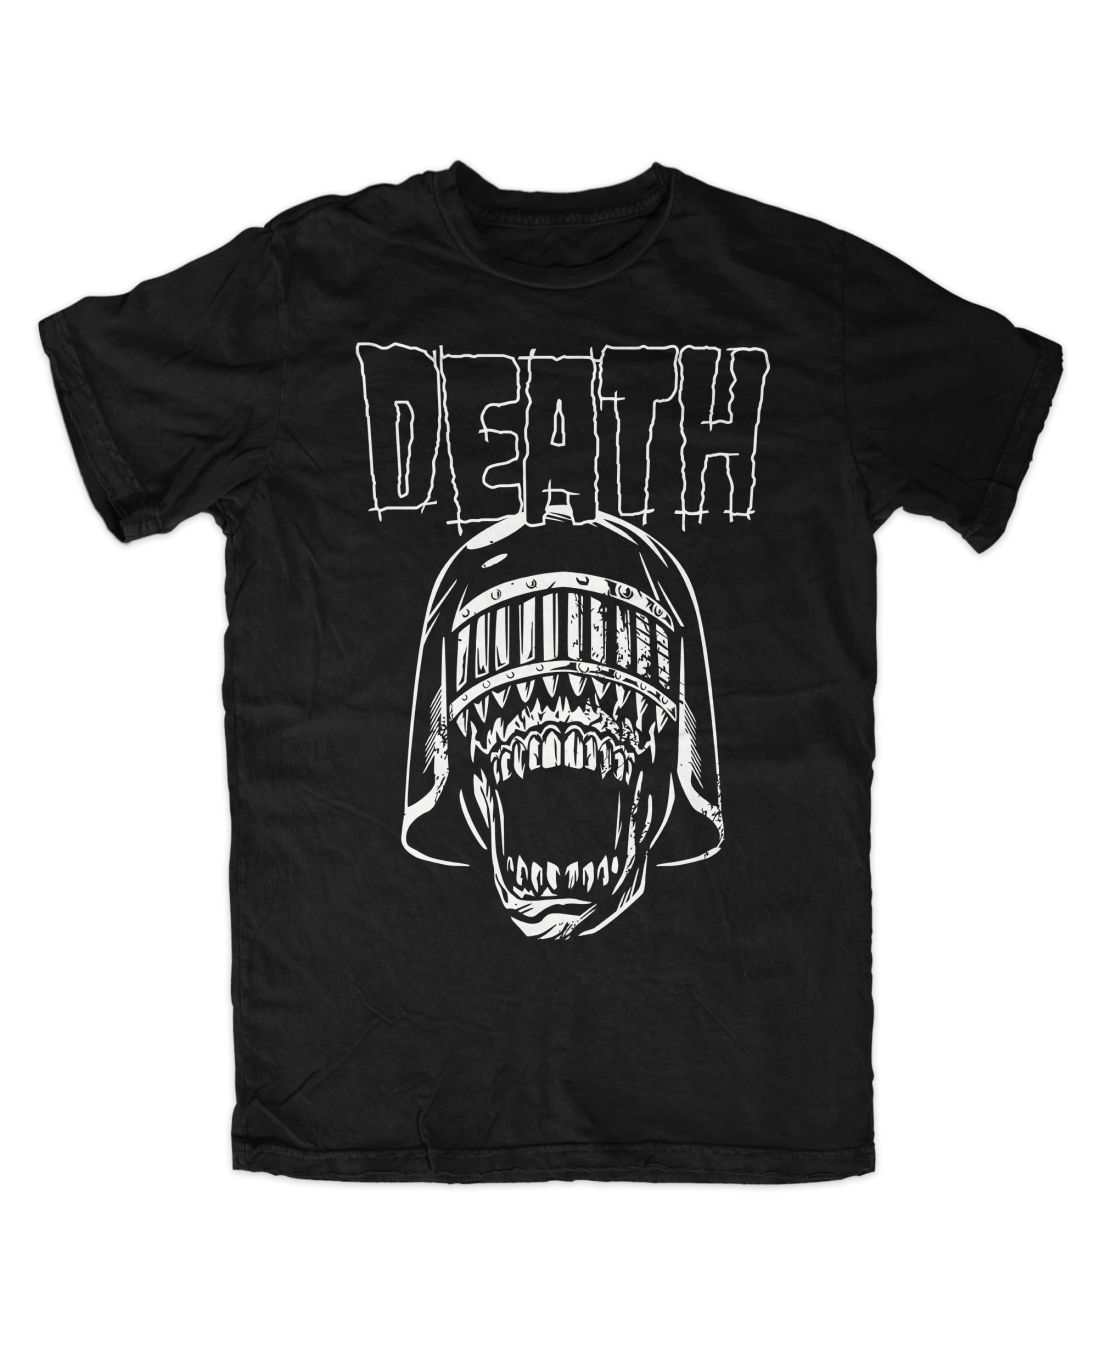 Judge Death 001 metal series